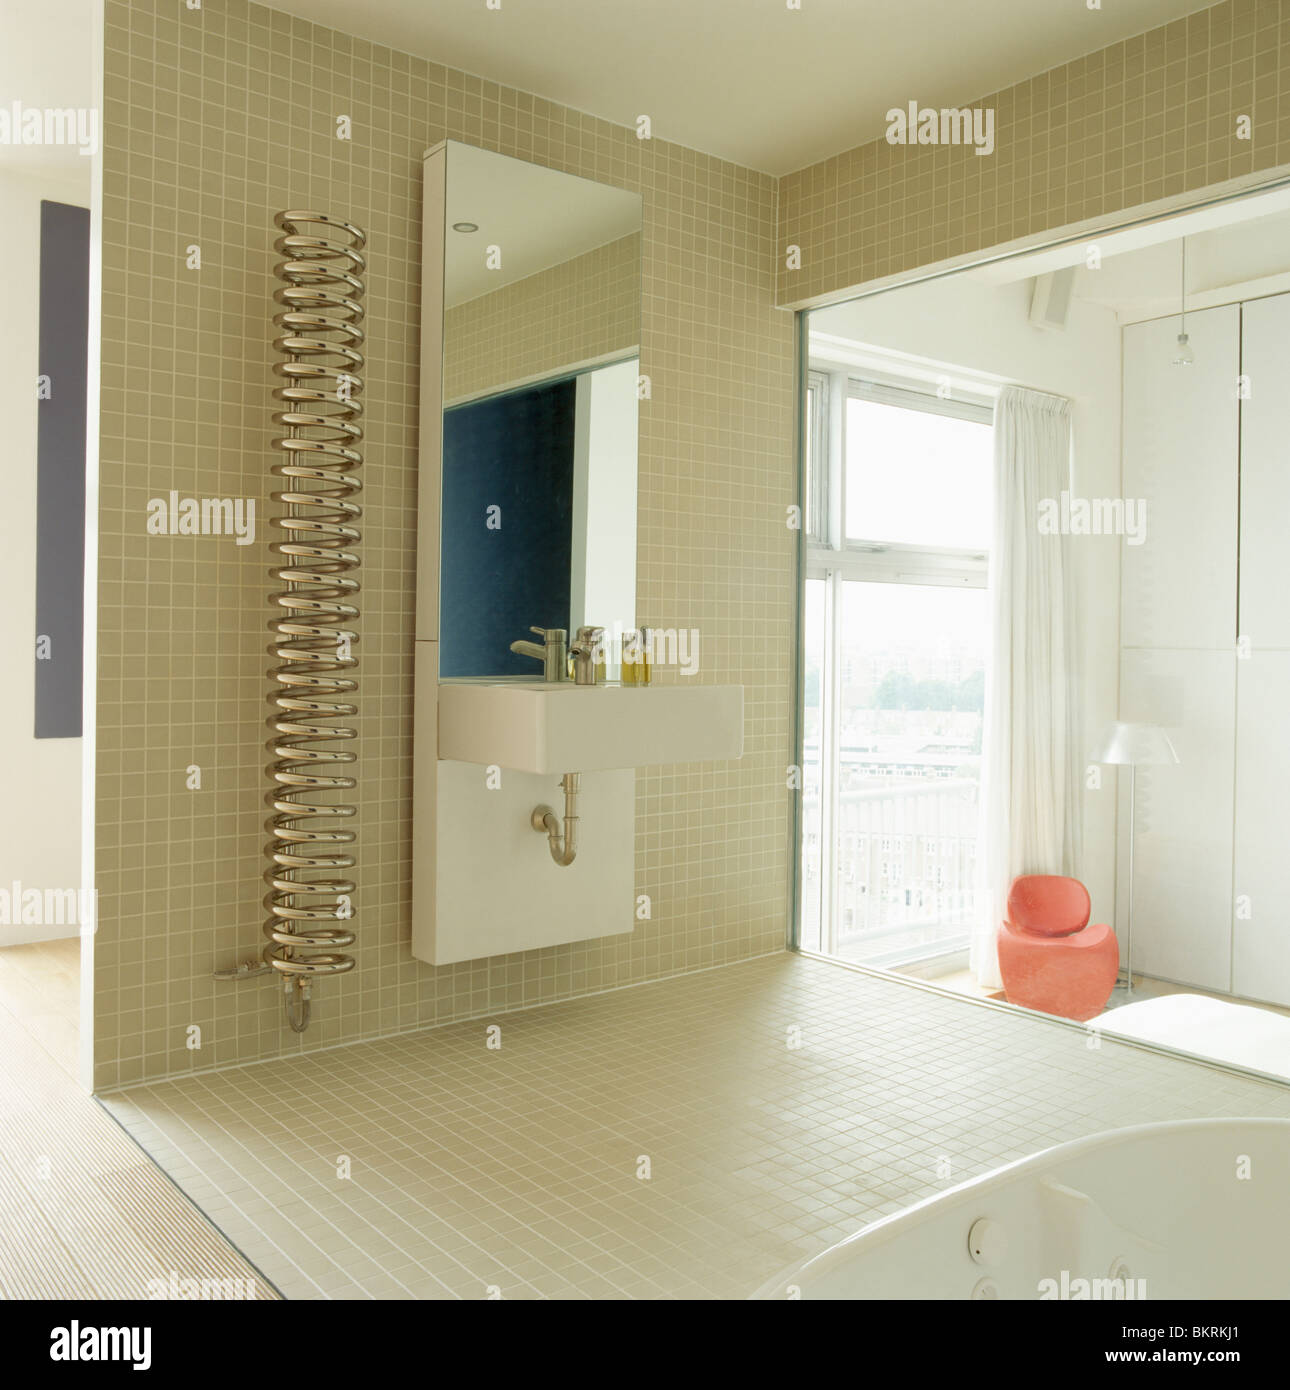 Chrom Spirale Heizkörper neben hoher Spiegel und Wand-Waschbecken im  modernen Bad mit Mosaikfliesen Stockfotografie - Alamy